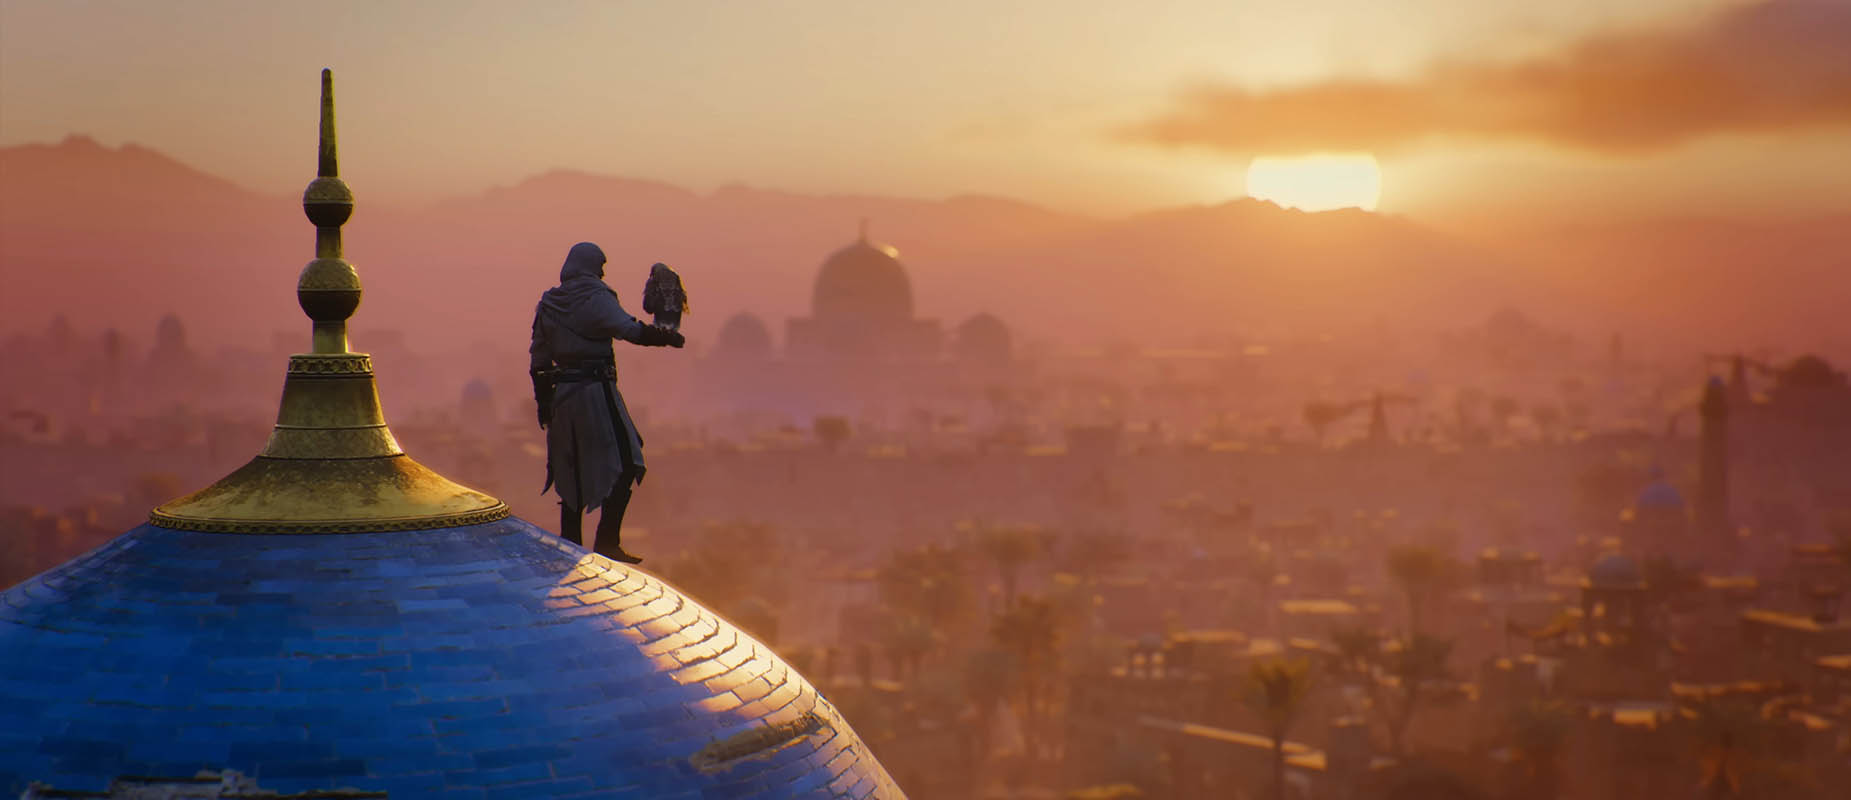 Assassin's Creed Mirage получил геймплей и сюжетный трейлер